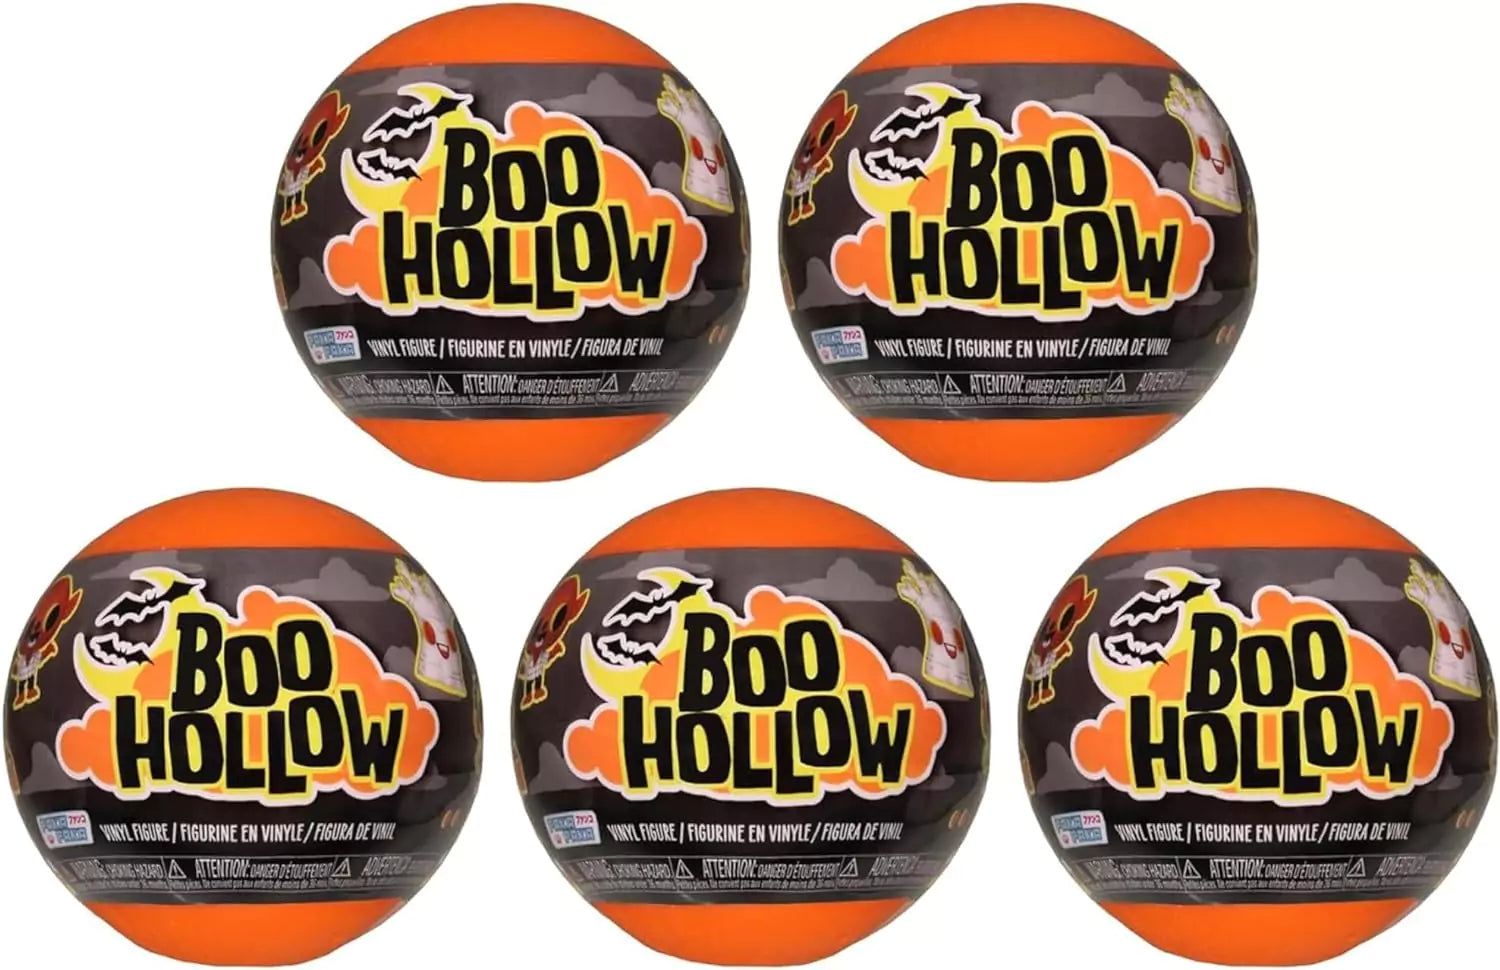 Boo Hollow & Hocus Pocus - Halloween Theme Gift Set - Funko Paka Paka Backpack, 5x Mini Figures & Hocus Pocus Card Game - Toptoys2u